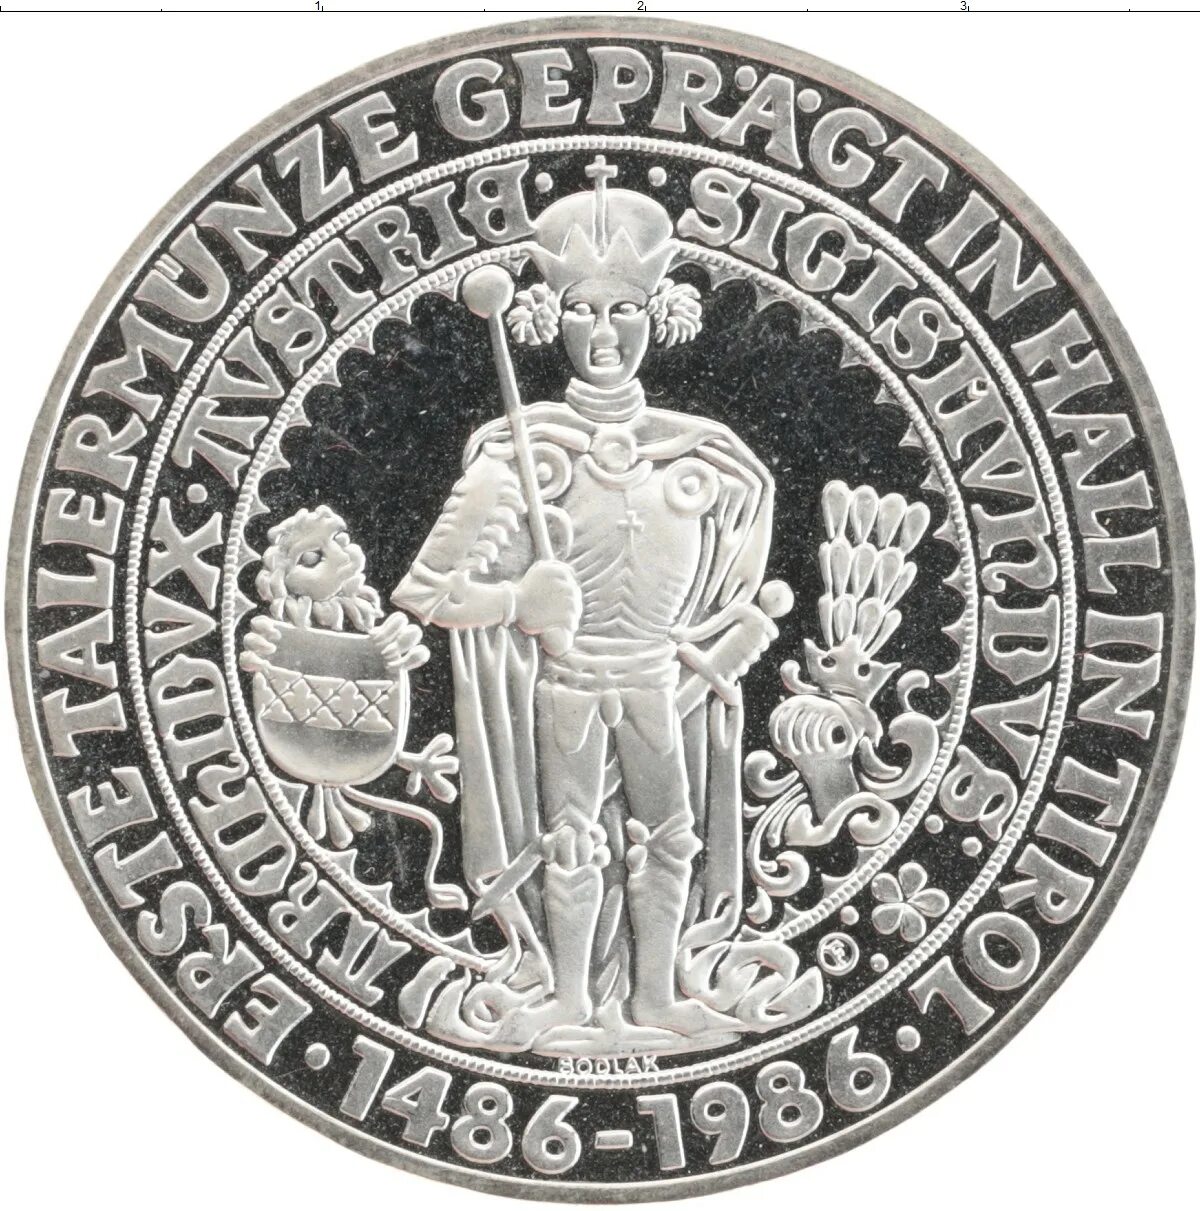 Австрия 5 шиллингов, 1986 пруф. 500 Австрийских шиллингов. Австрия 10 шиллингов 1986 года. Австрия 1 шиллинг 1986 год. Чеканка первой в мире монеты 5 класс